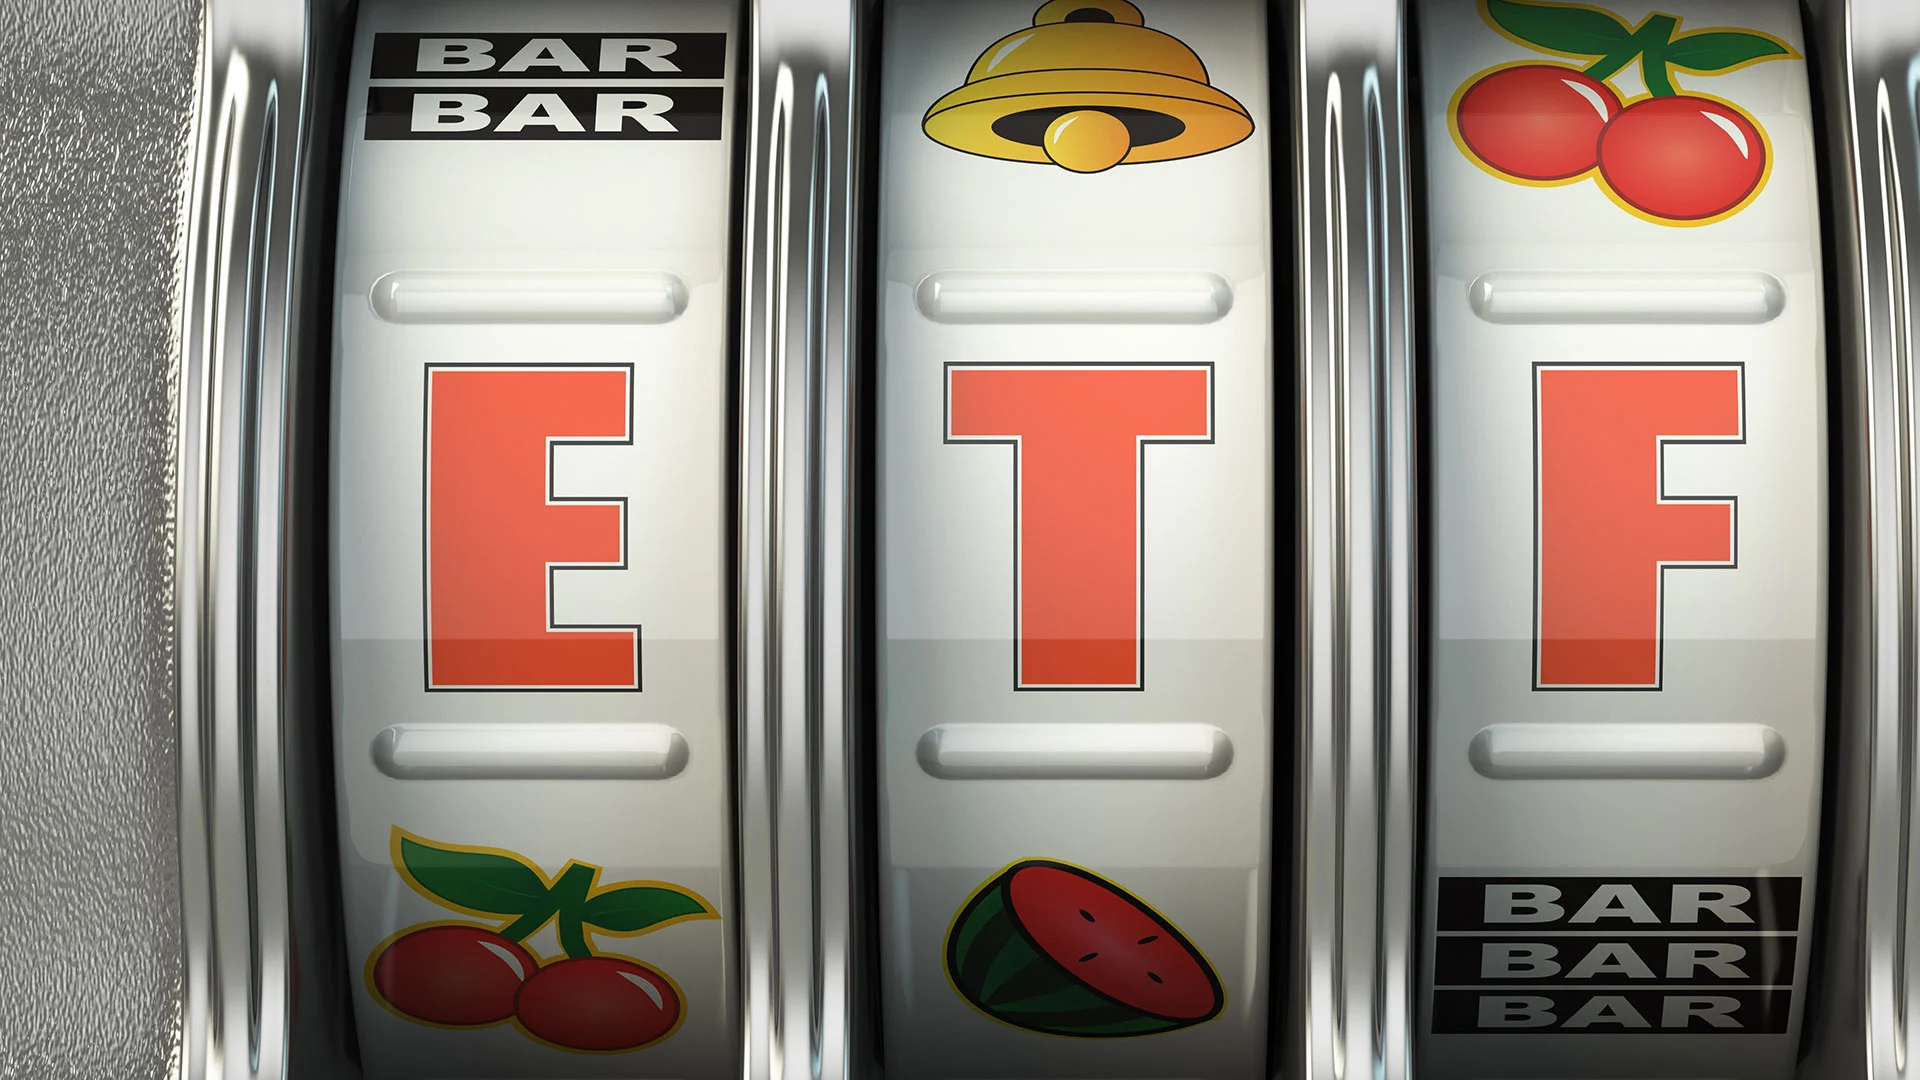 Lotto spielen oder in ETFs anlegen? Warum die falsche Entscheidung Sie bis zu 400.000 € ärmer macht (Foto: IMAGO)